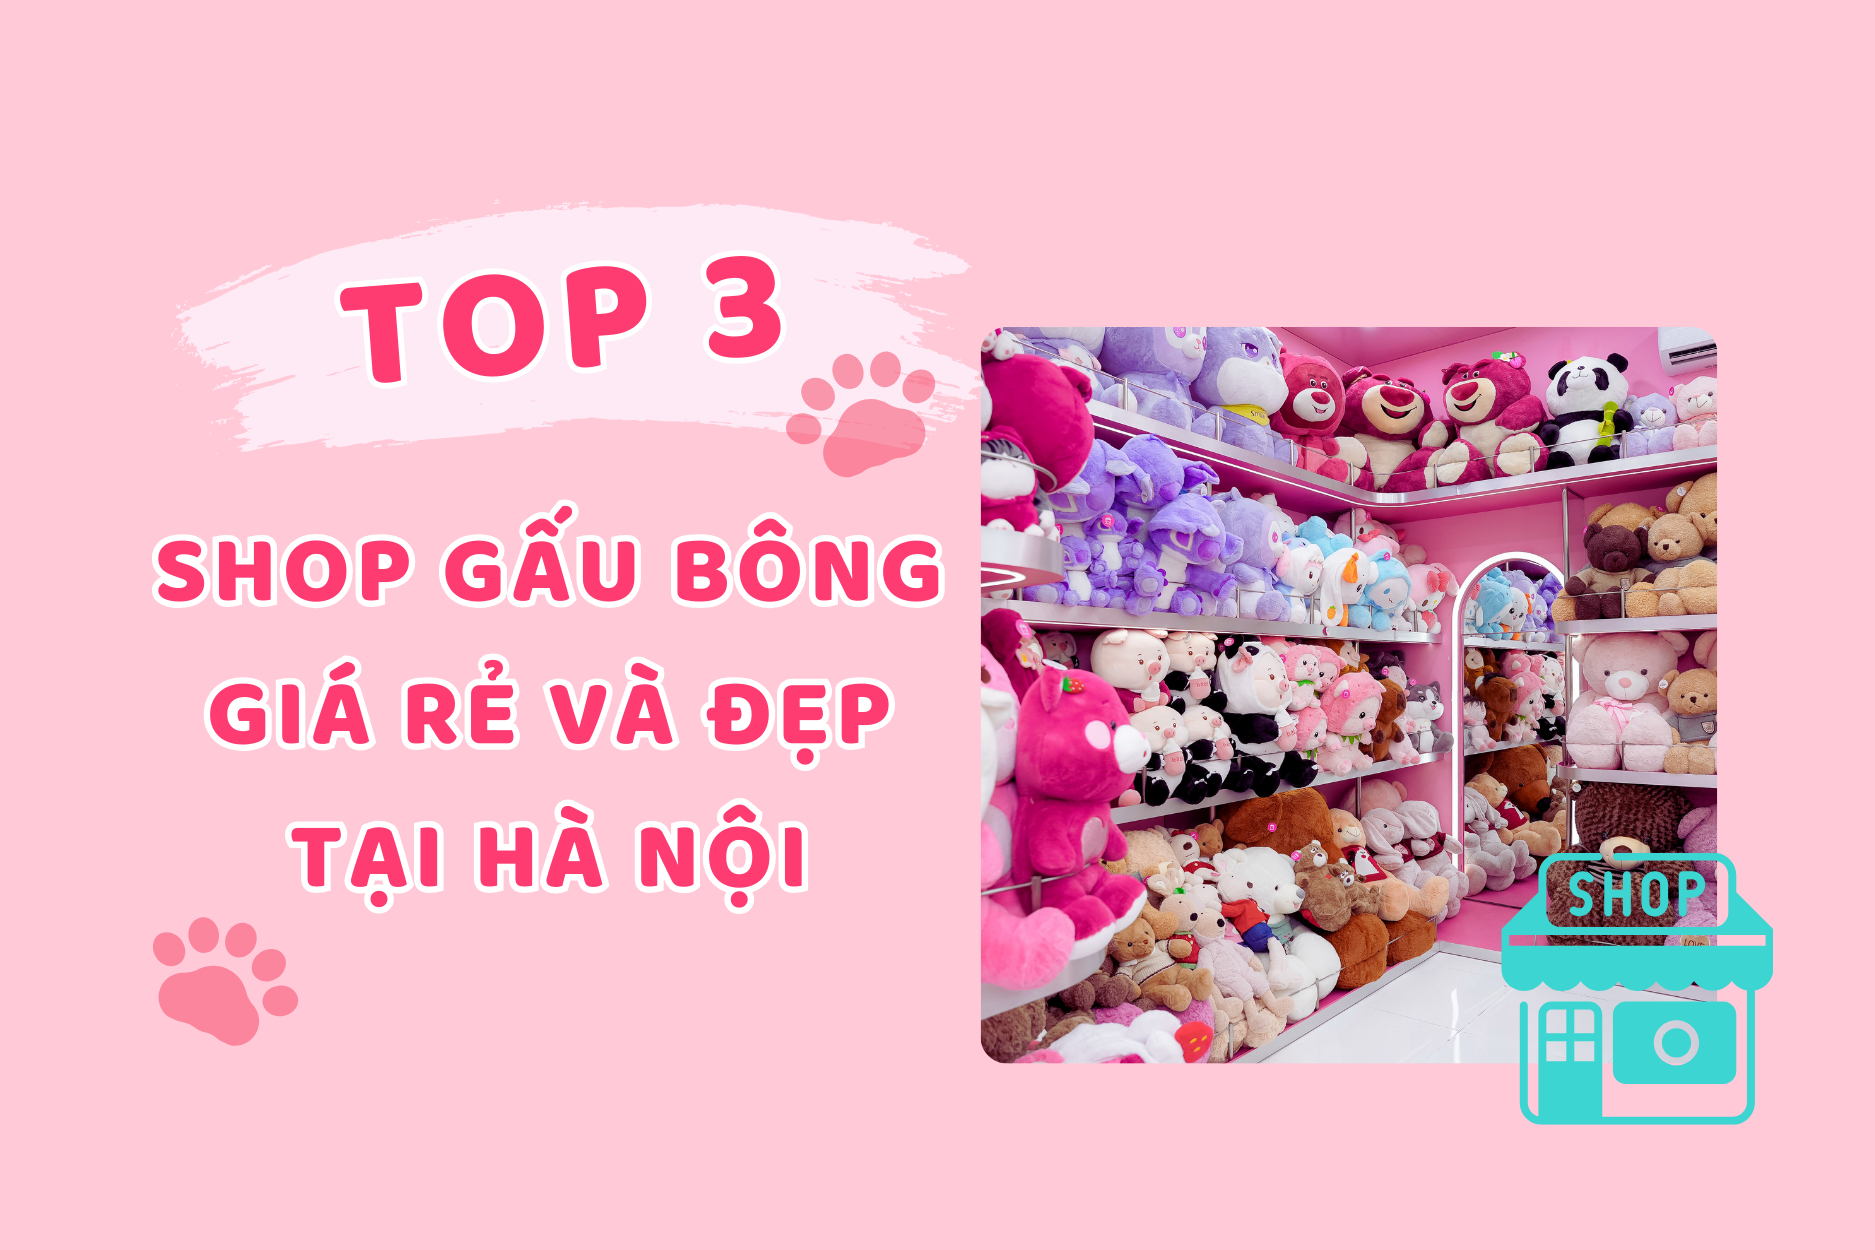 Top 3 shop gấu bông giá rẻ, đẹp nhất tại Hà Nội